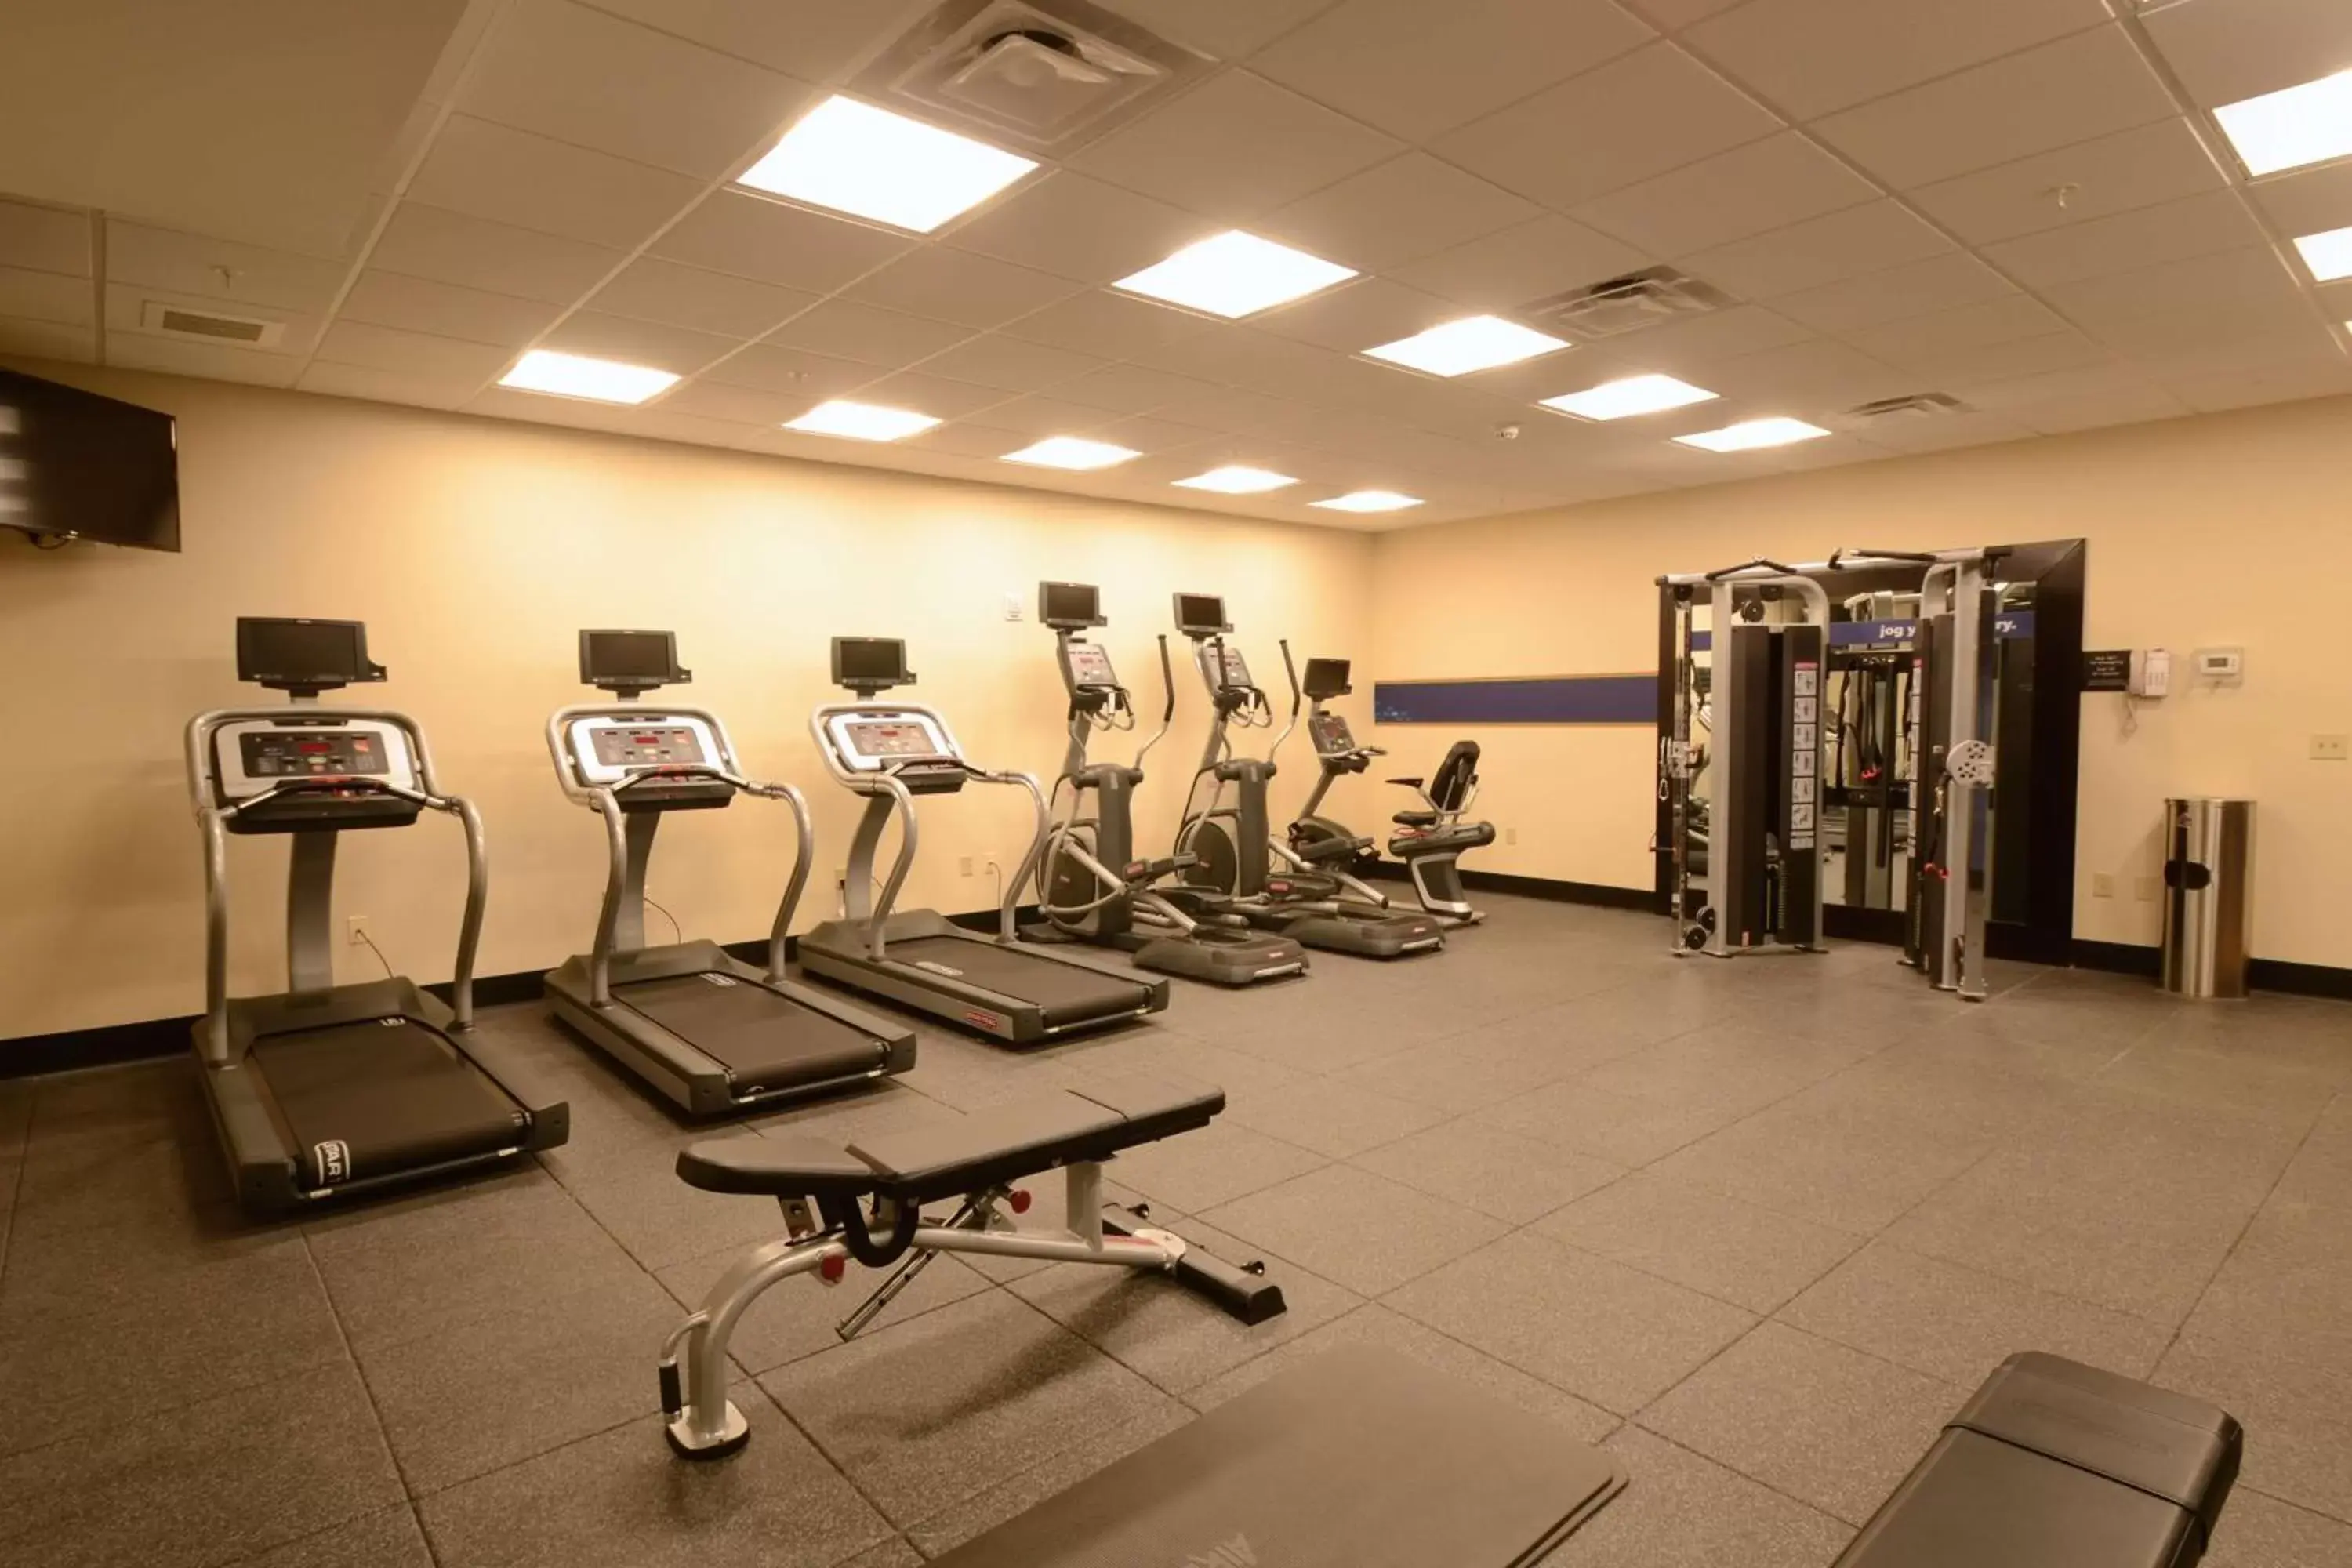 Fitness centre/facilities, Fitness Center/Facilities in Hampton Inn & Suites Cazenovia, NY